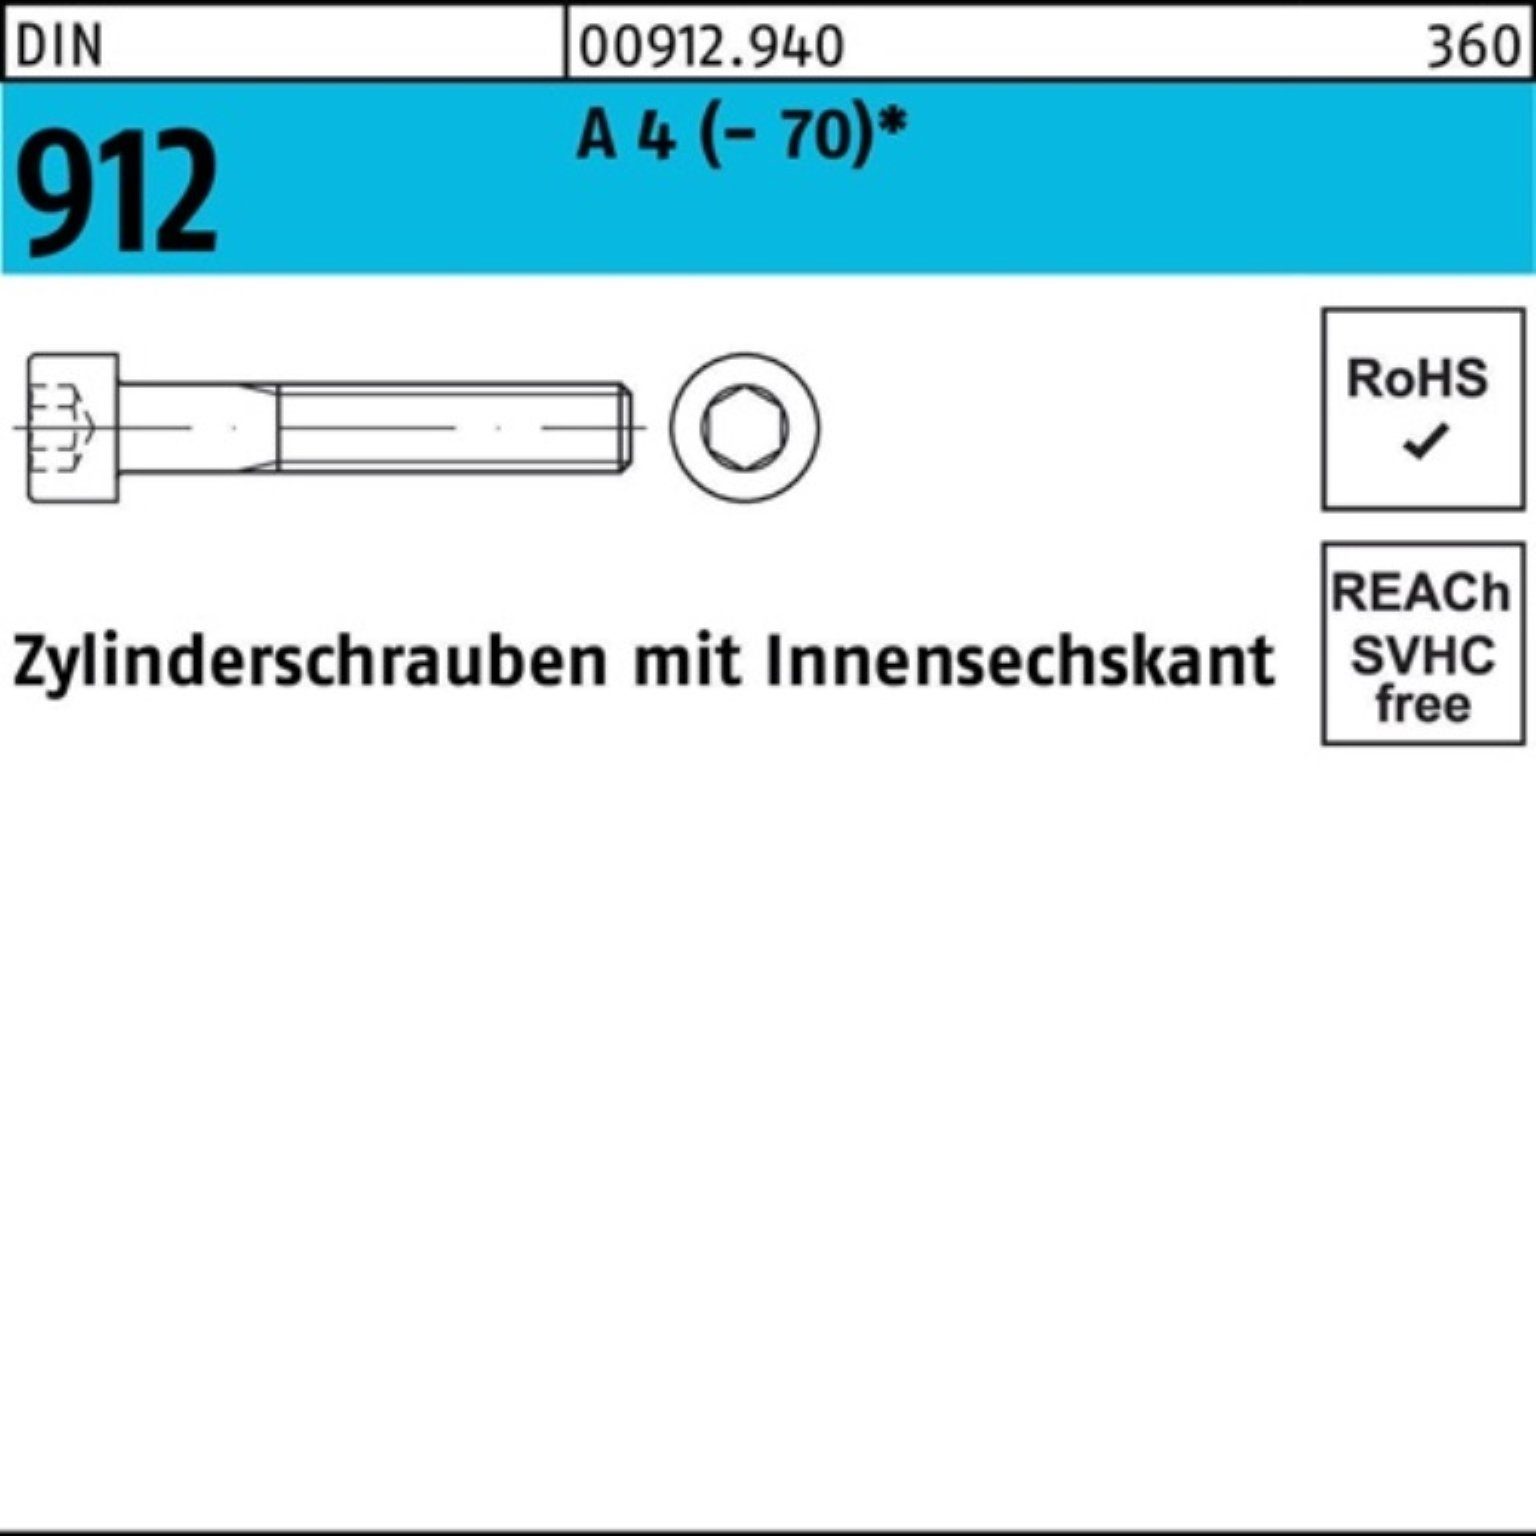 Reyher Zylinderschraube 100er Pack Zylinderschraube Innen-6kt 4 St 160 DIN A (70) 912 M20x 1